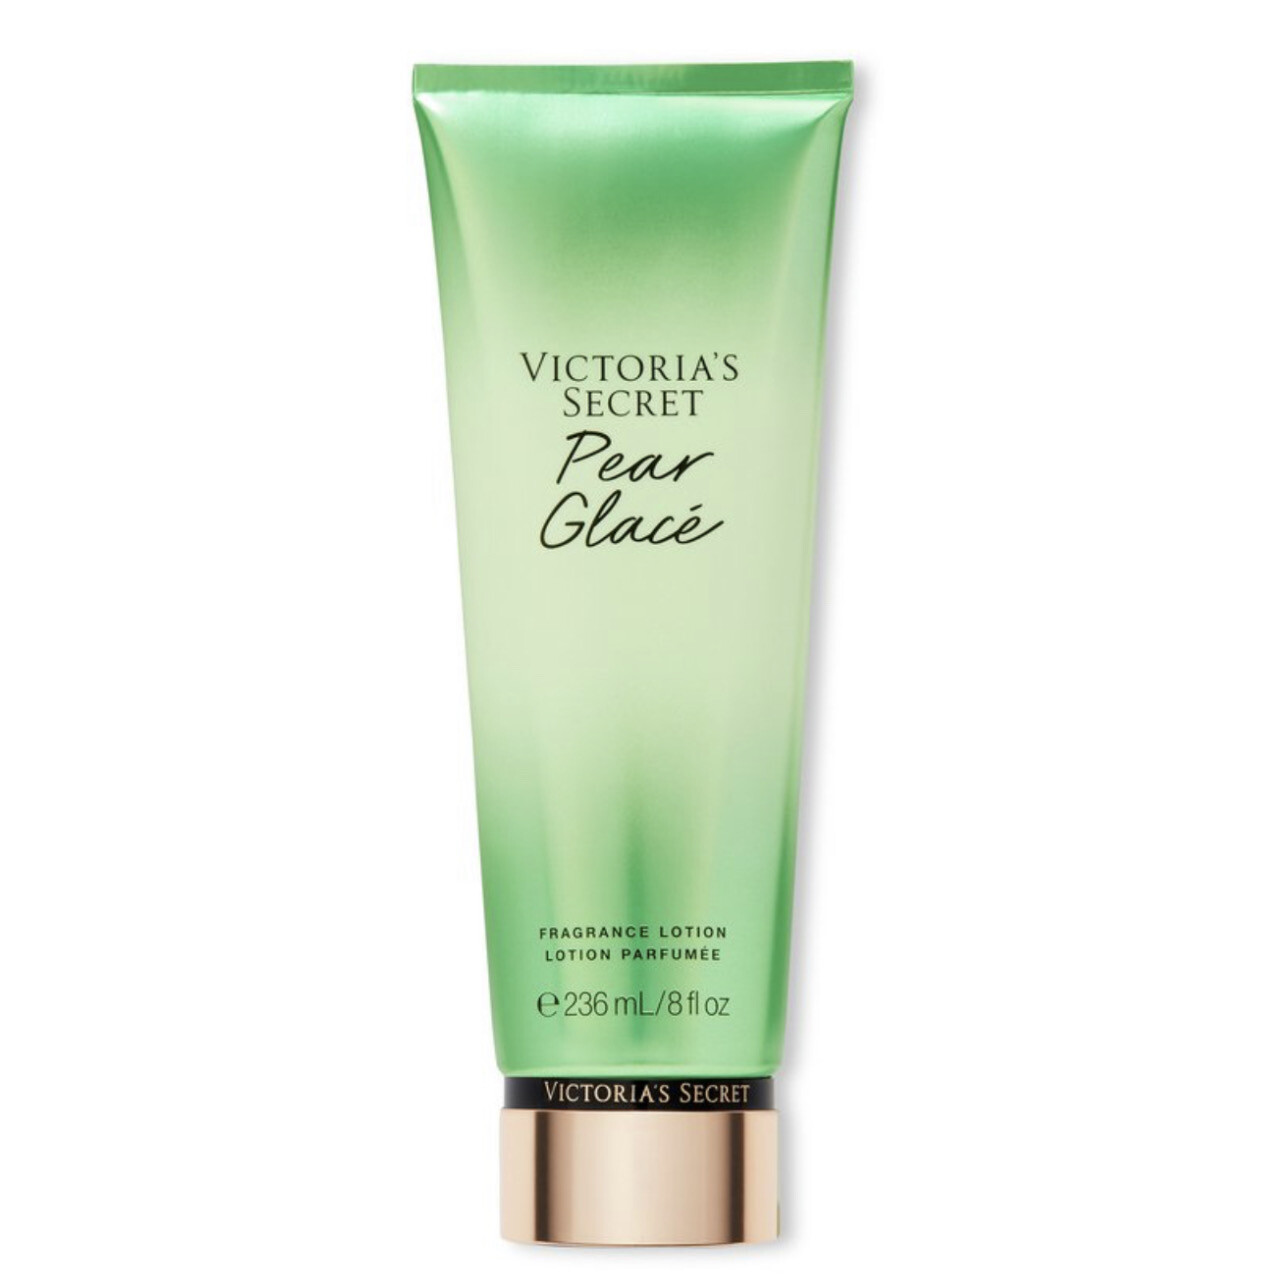 Victoria’s Secret - Fragrance Lotion | Pear Glacé